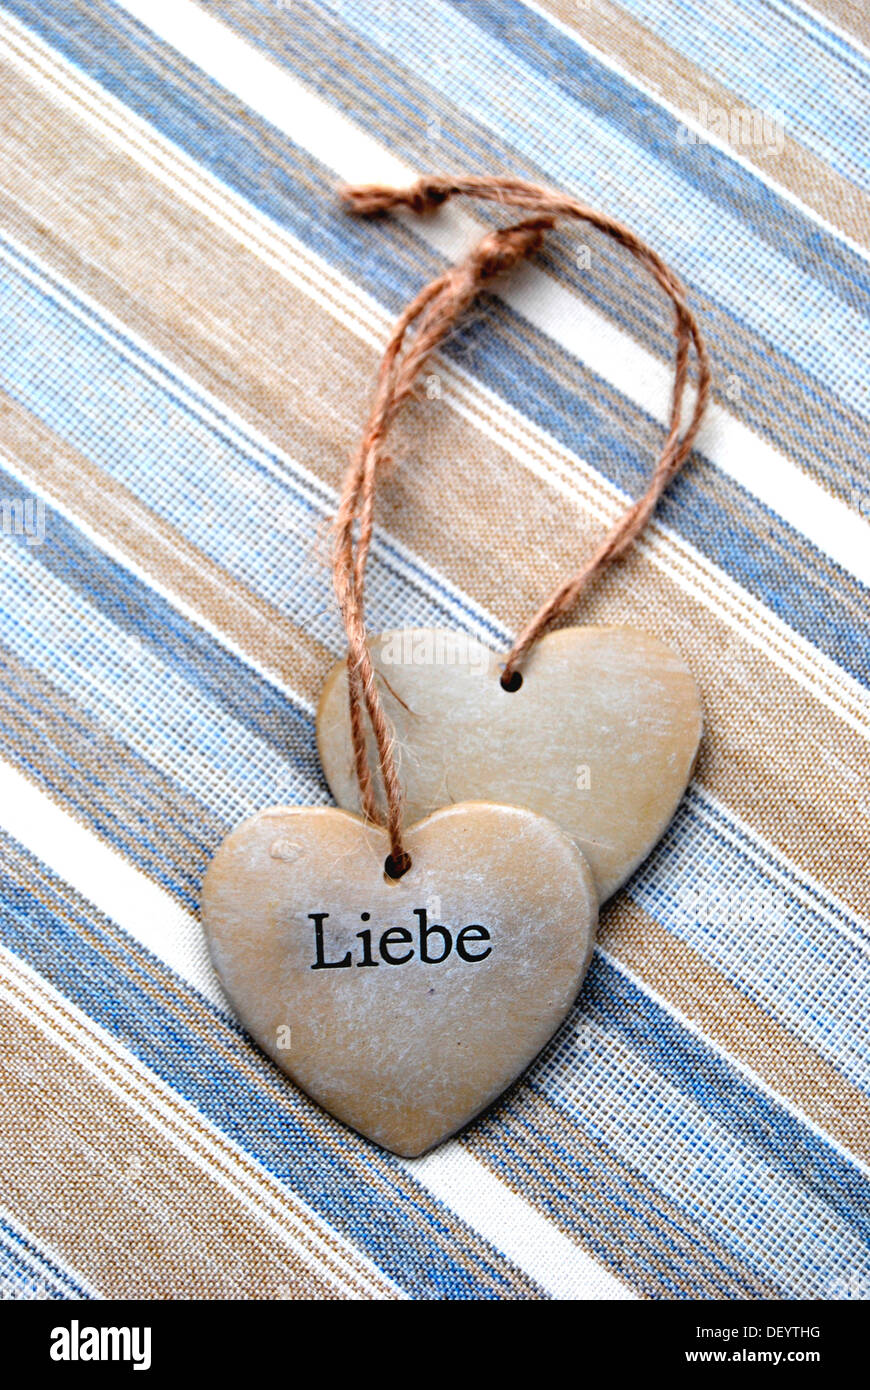 Deux cœurs de pierre, lettrage 'Liebe', l'allemand pour 'Amour', image symbolique de la solidarité Banque D'Images